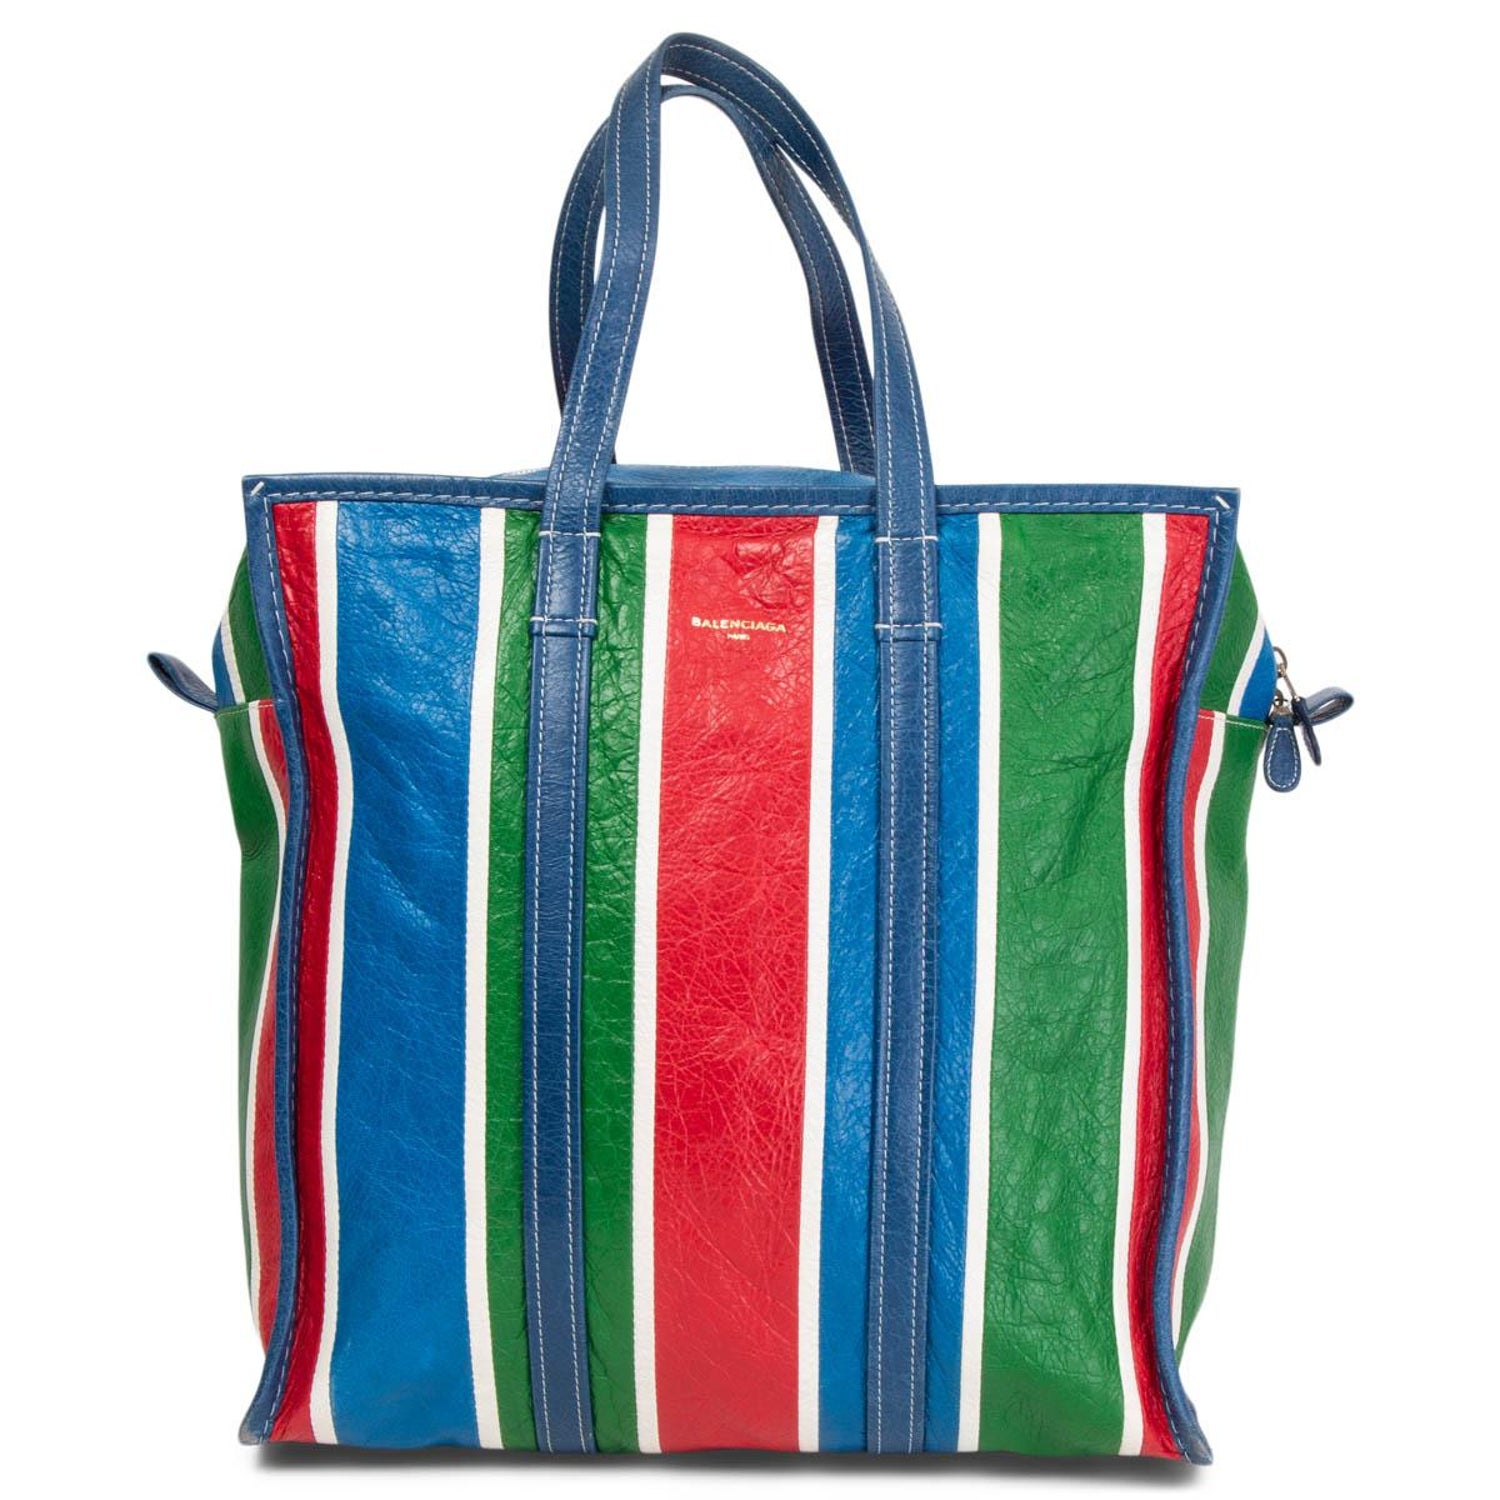 Balenciaga Bazar Shopper - 4 For Sale on 1stDibs | balenciaga bazar bag, balenciaga  bazar tote, balenciaga bazar bag xl